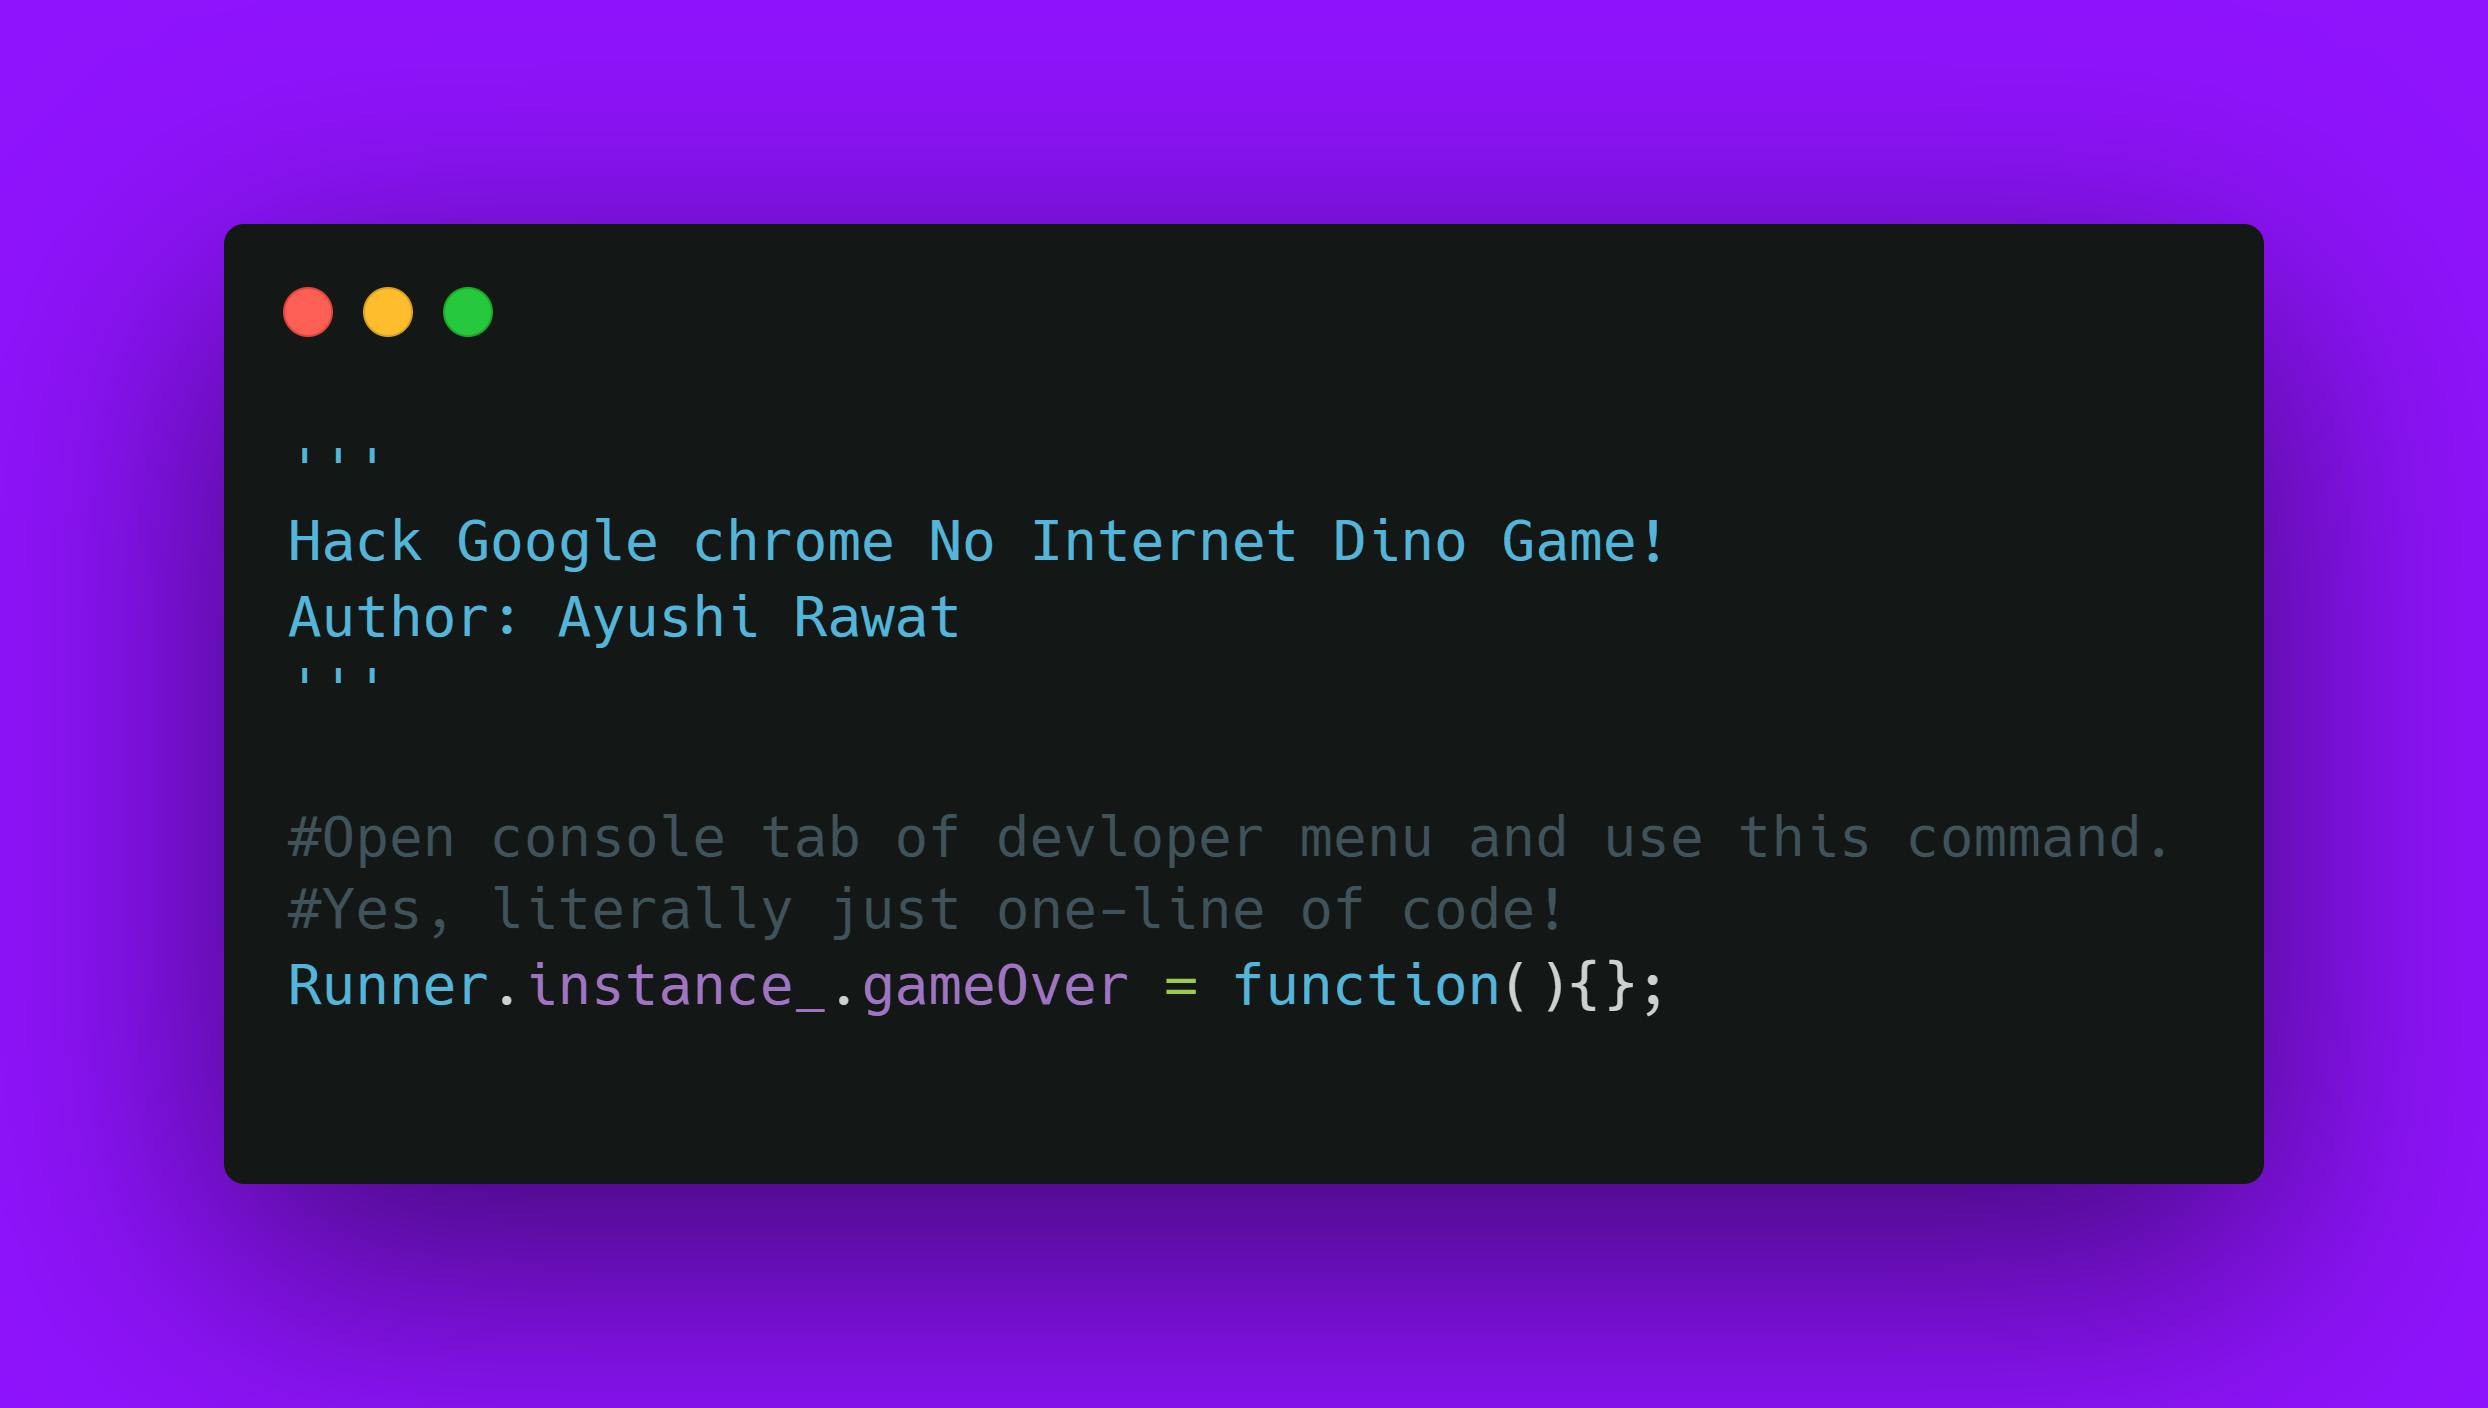 Hack Google chrome No Internet Dino Game!